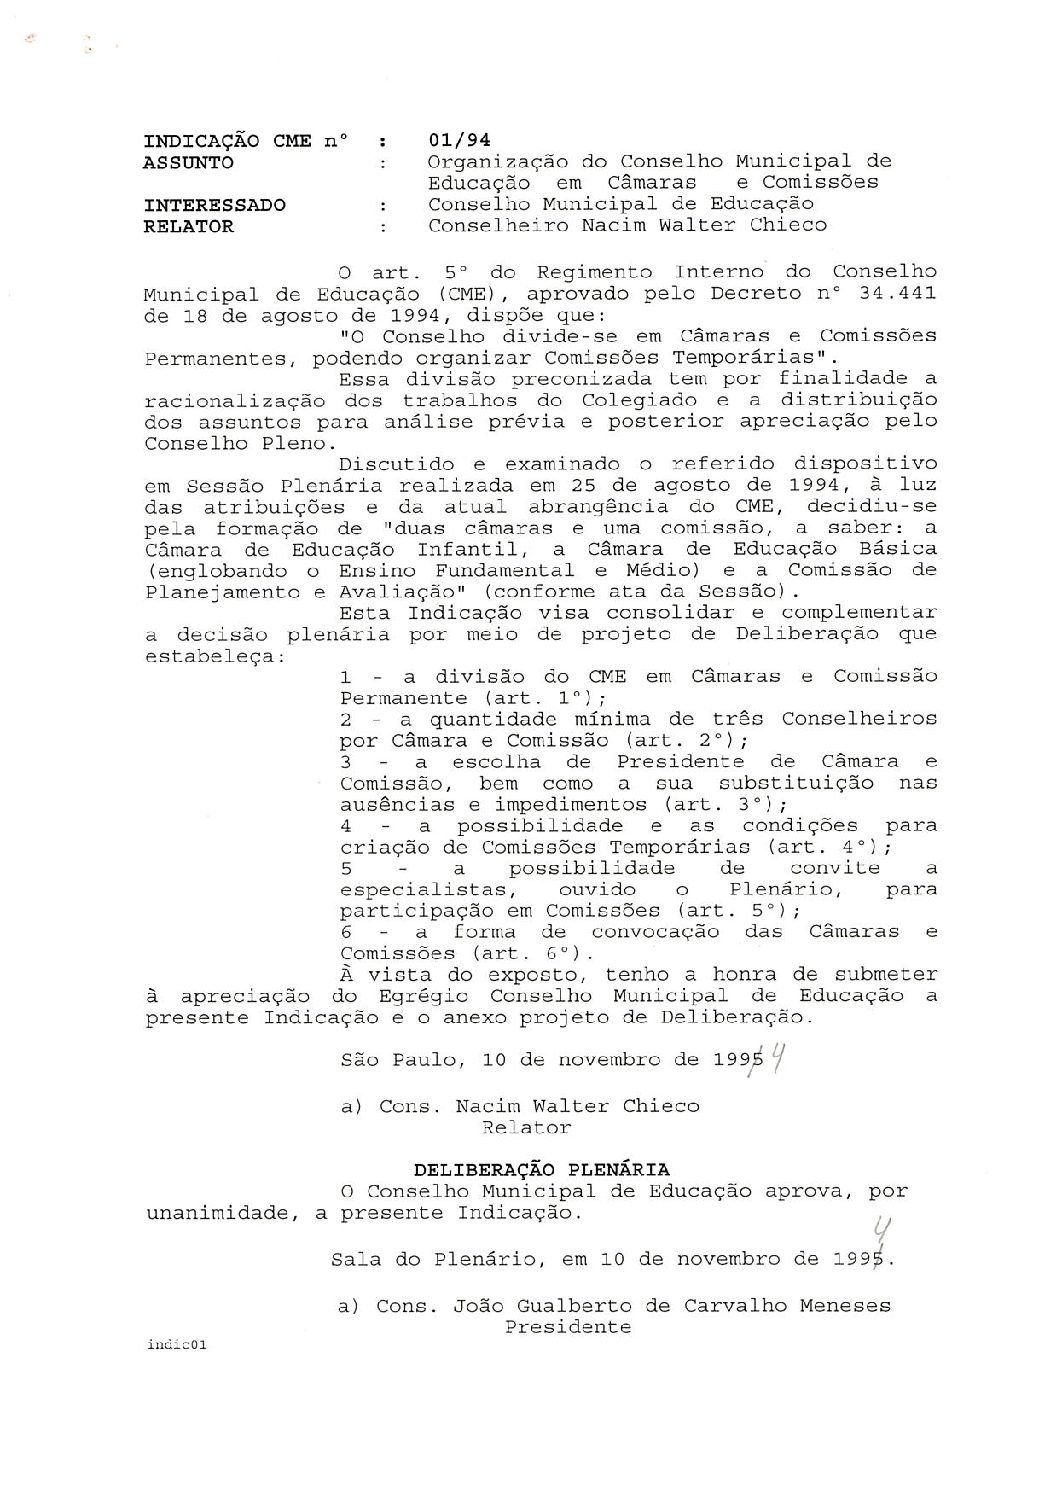 Indicação CME nº 01/1994 - Organização do Conselho Municipal de Educação em Câmaras e Comissões